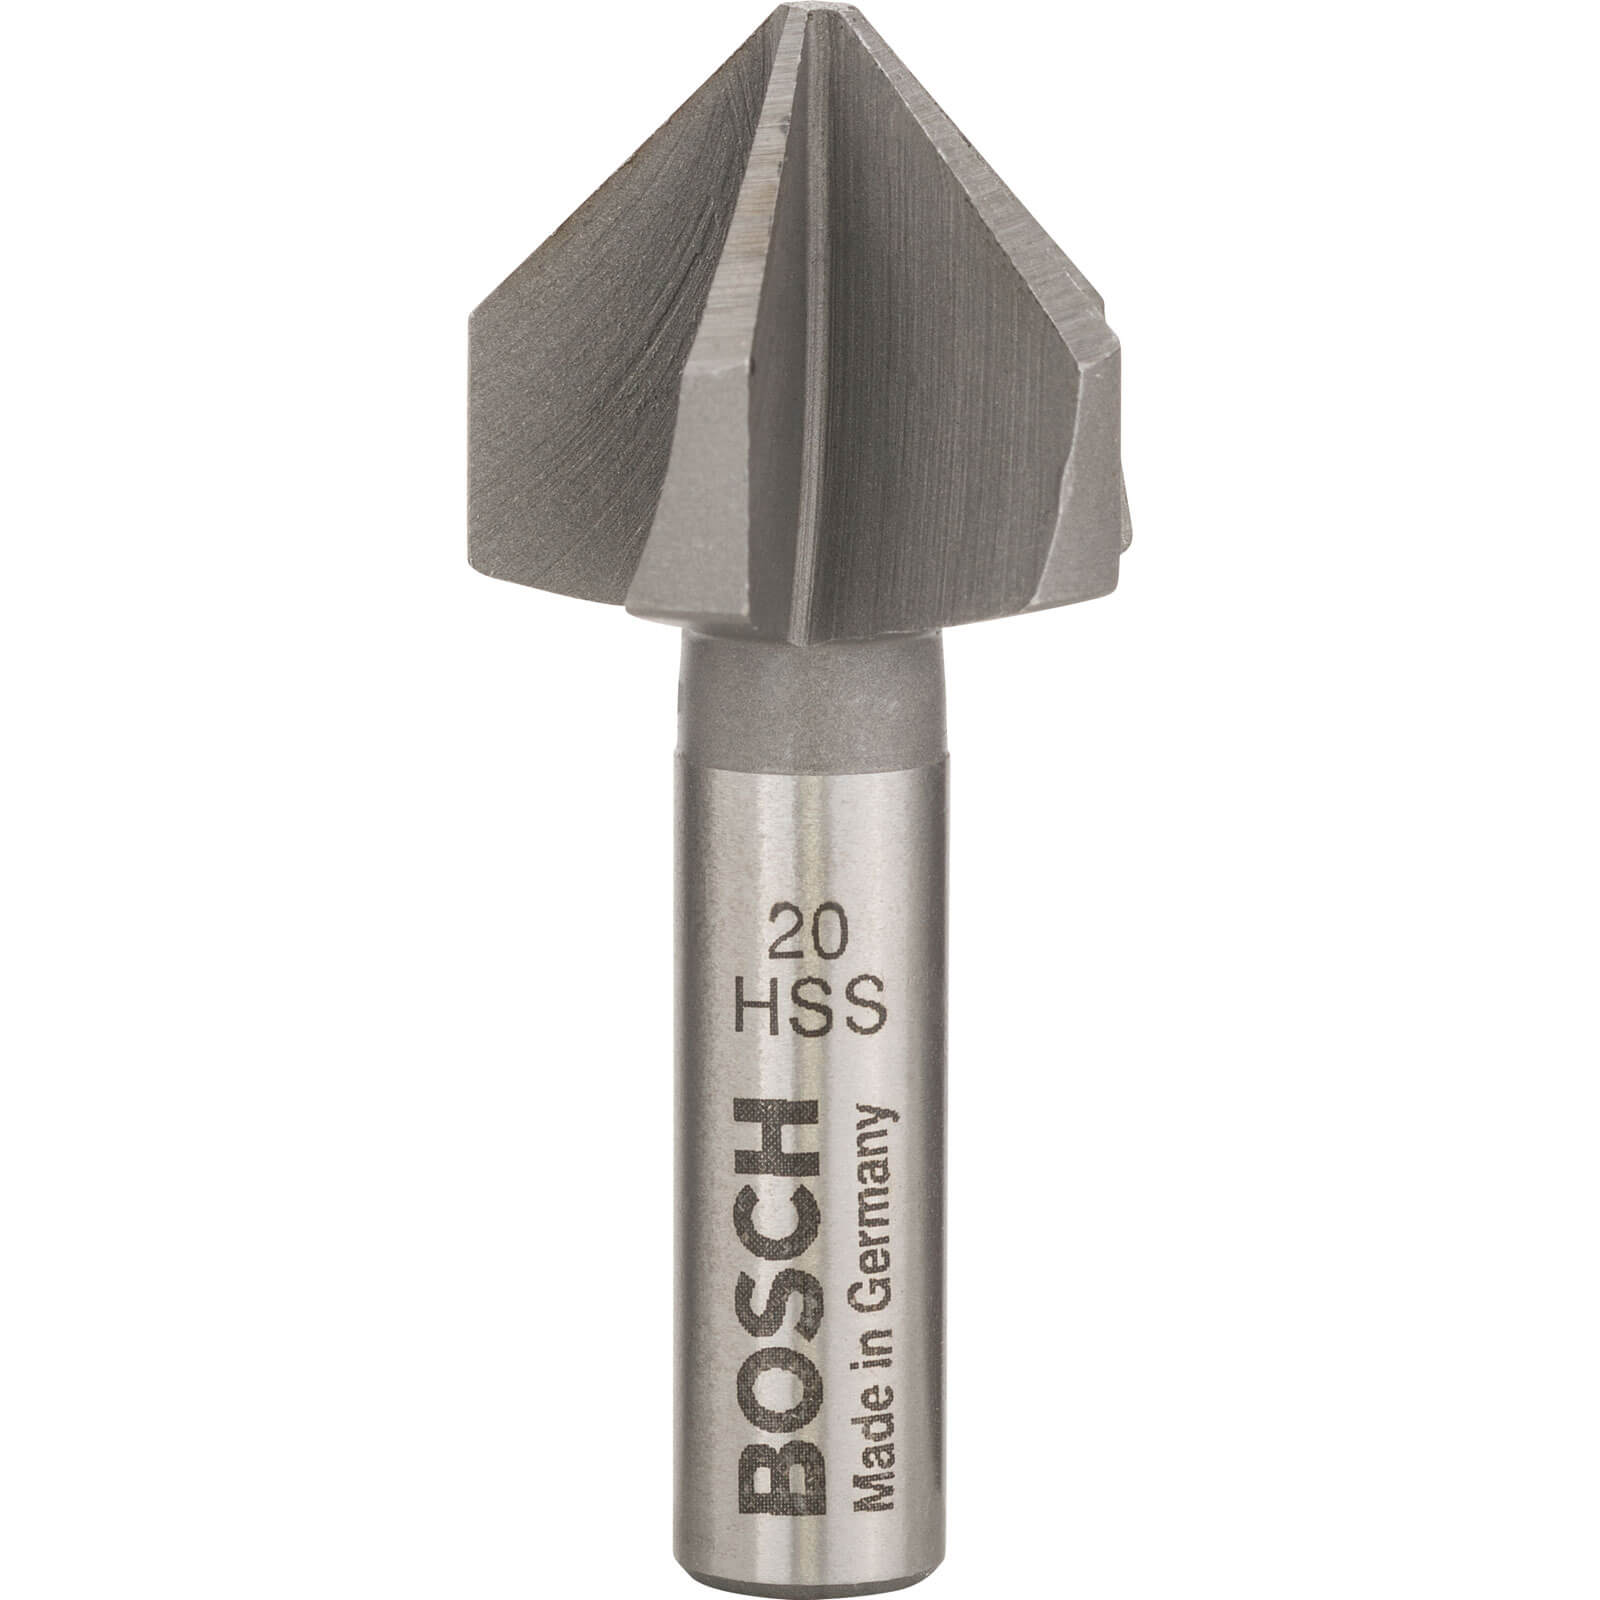 Image of Bosch HSS Countersink Bit 20mm